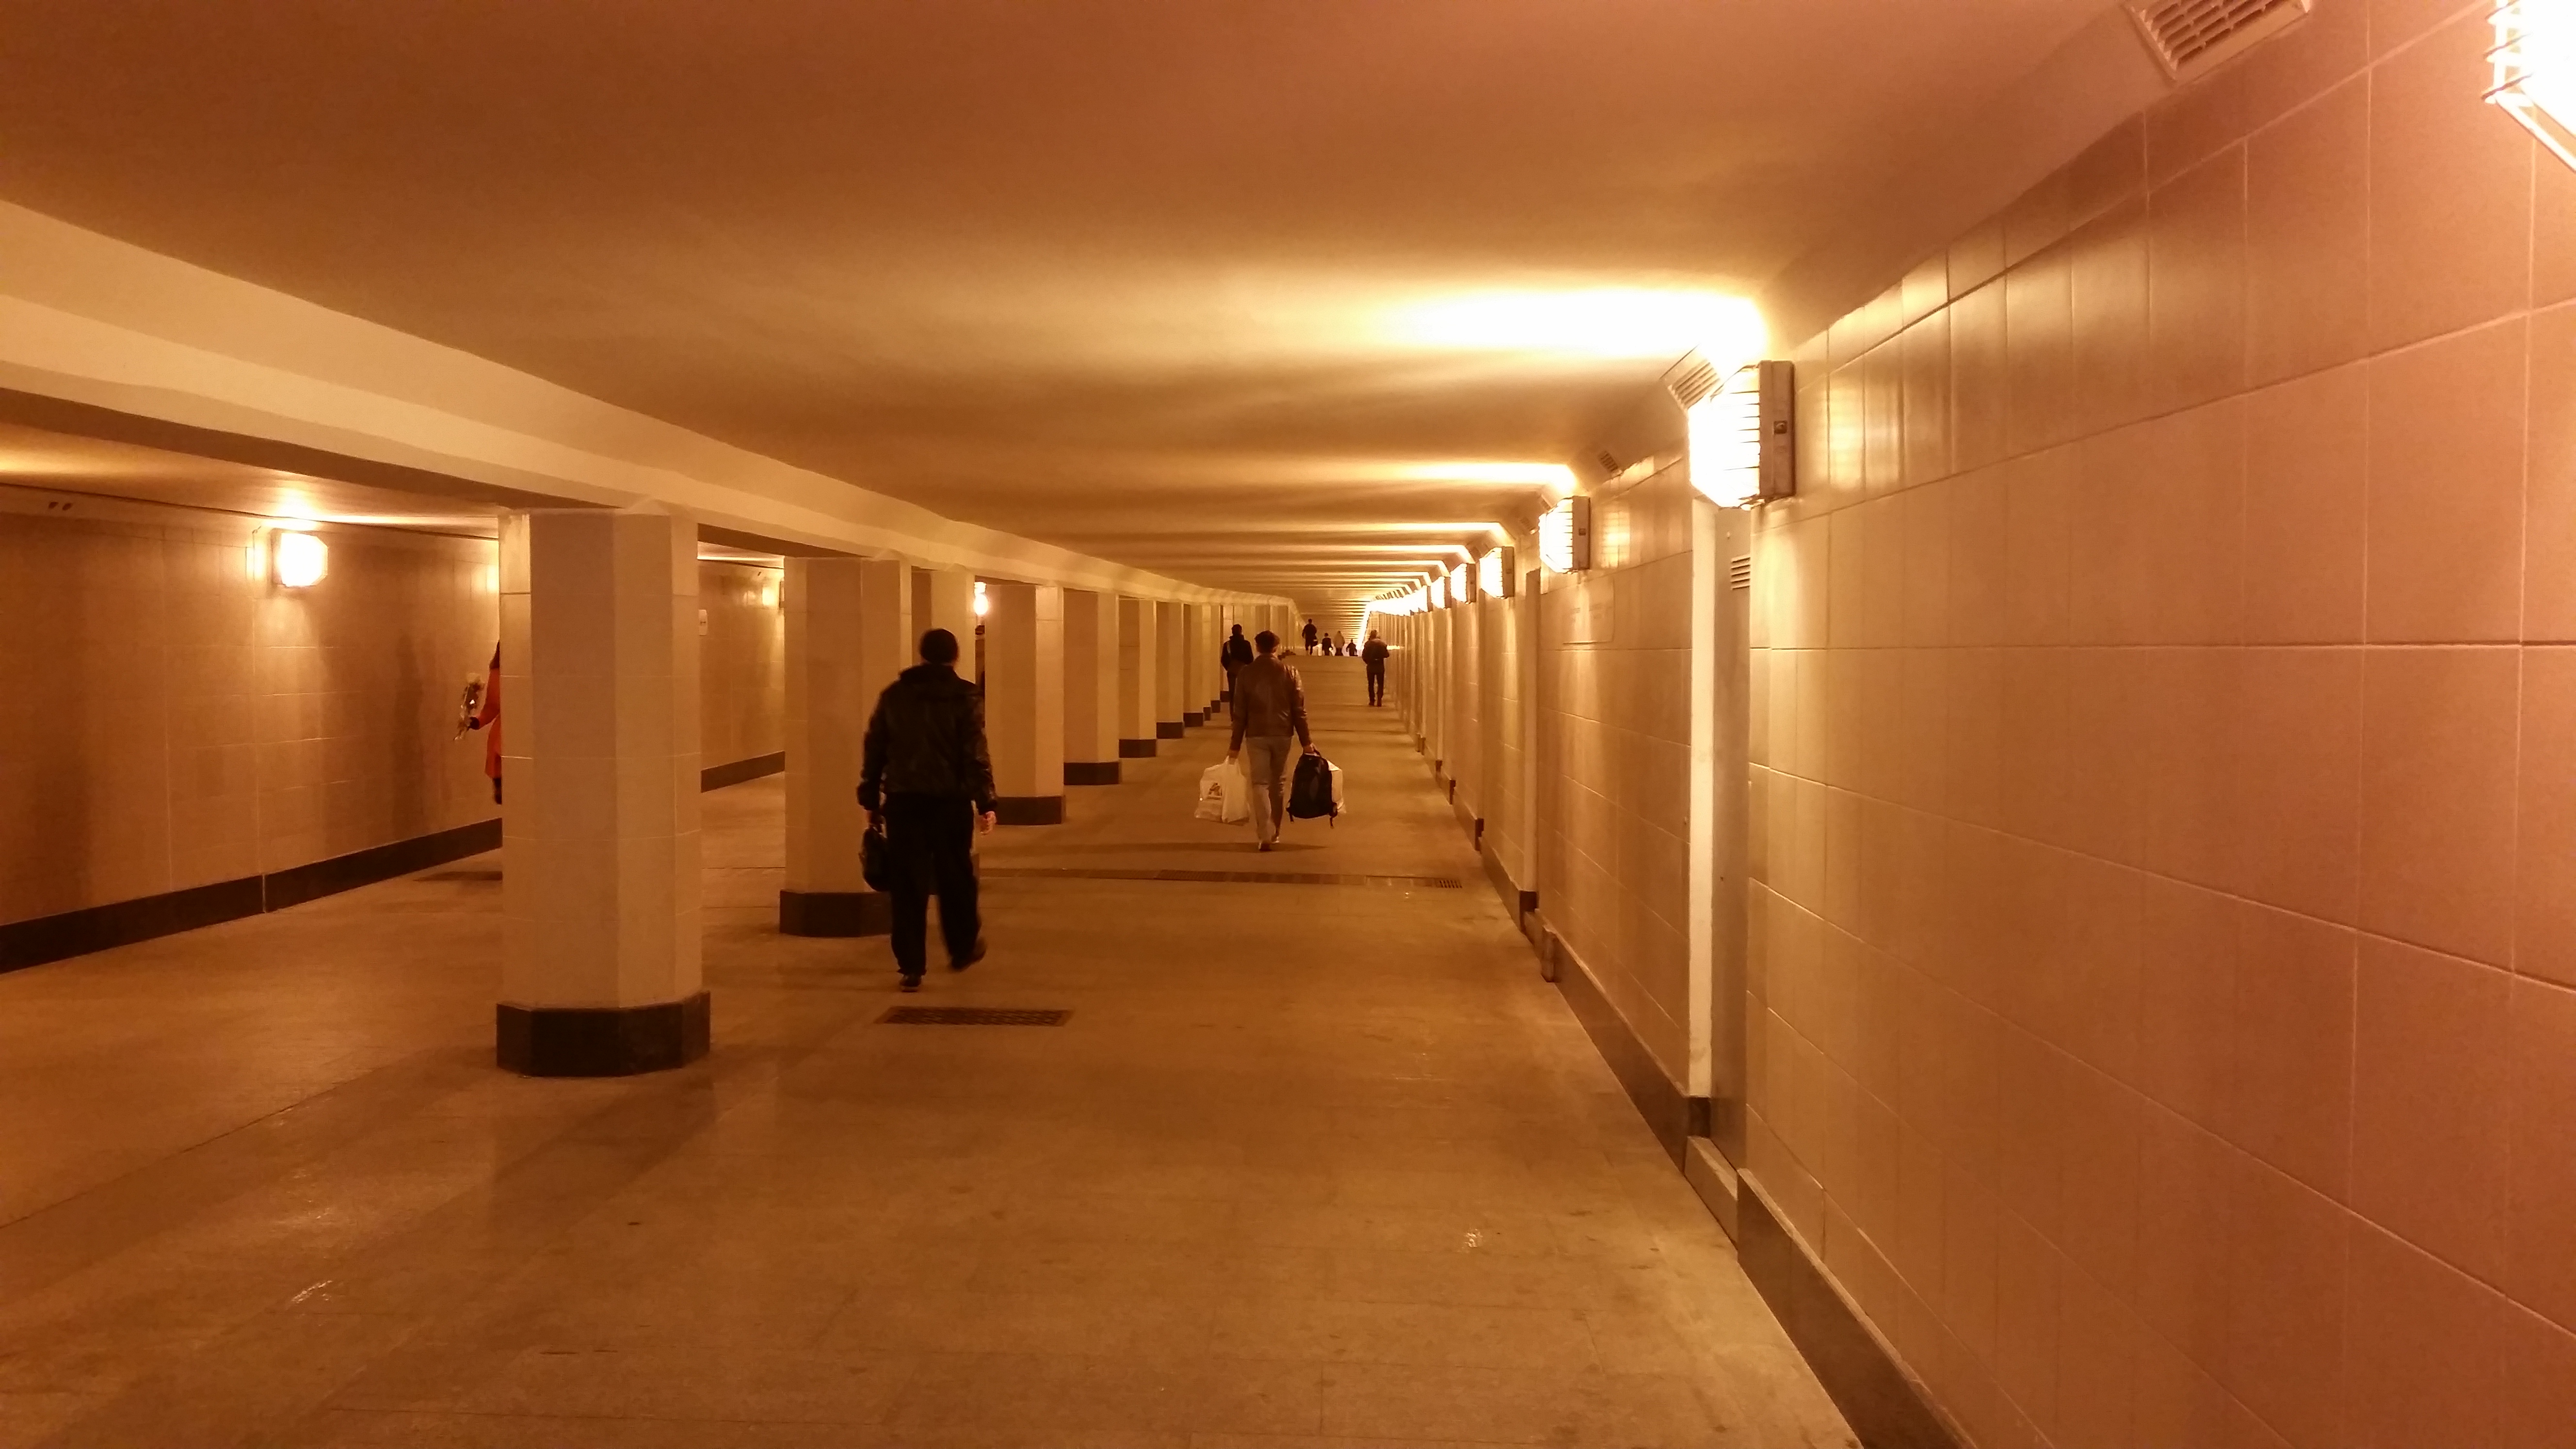 Подземный переход между станциями метро "Петровский парк" и "Динамо" построят к декабрю